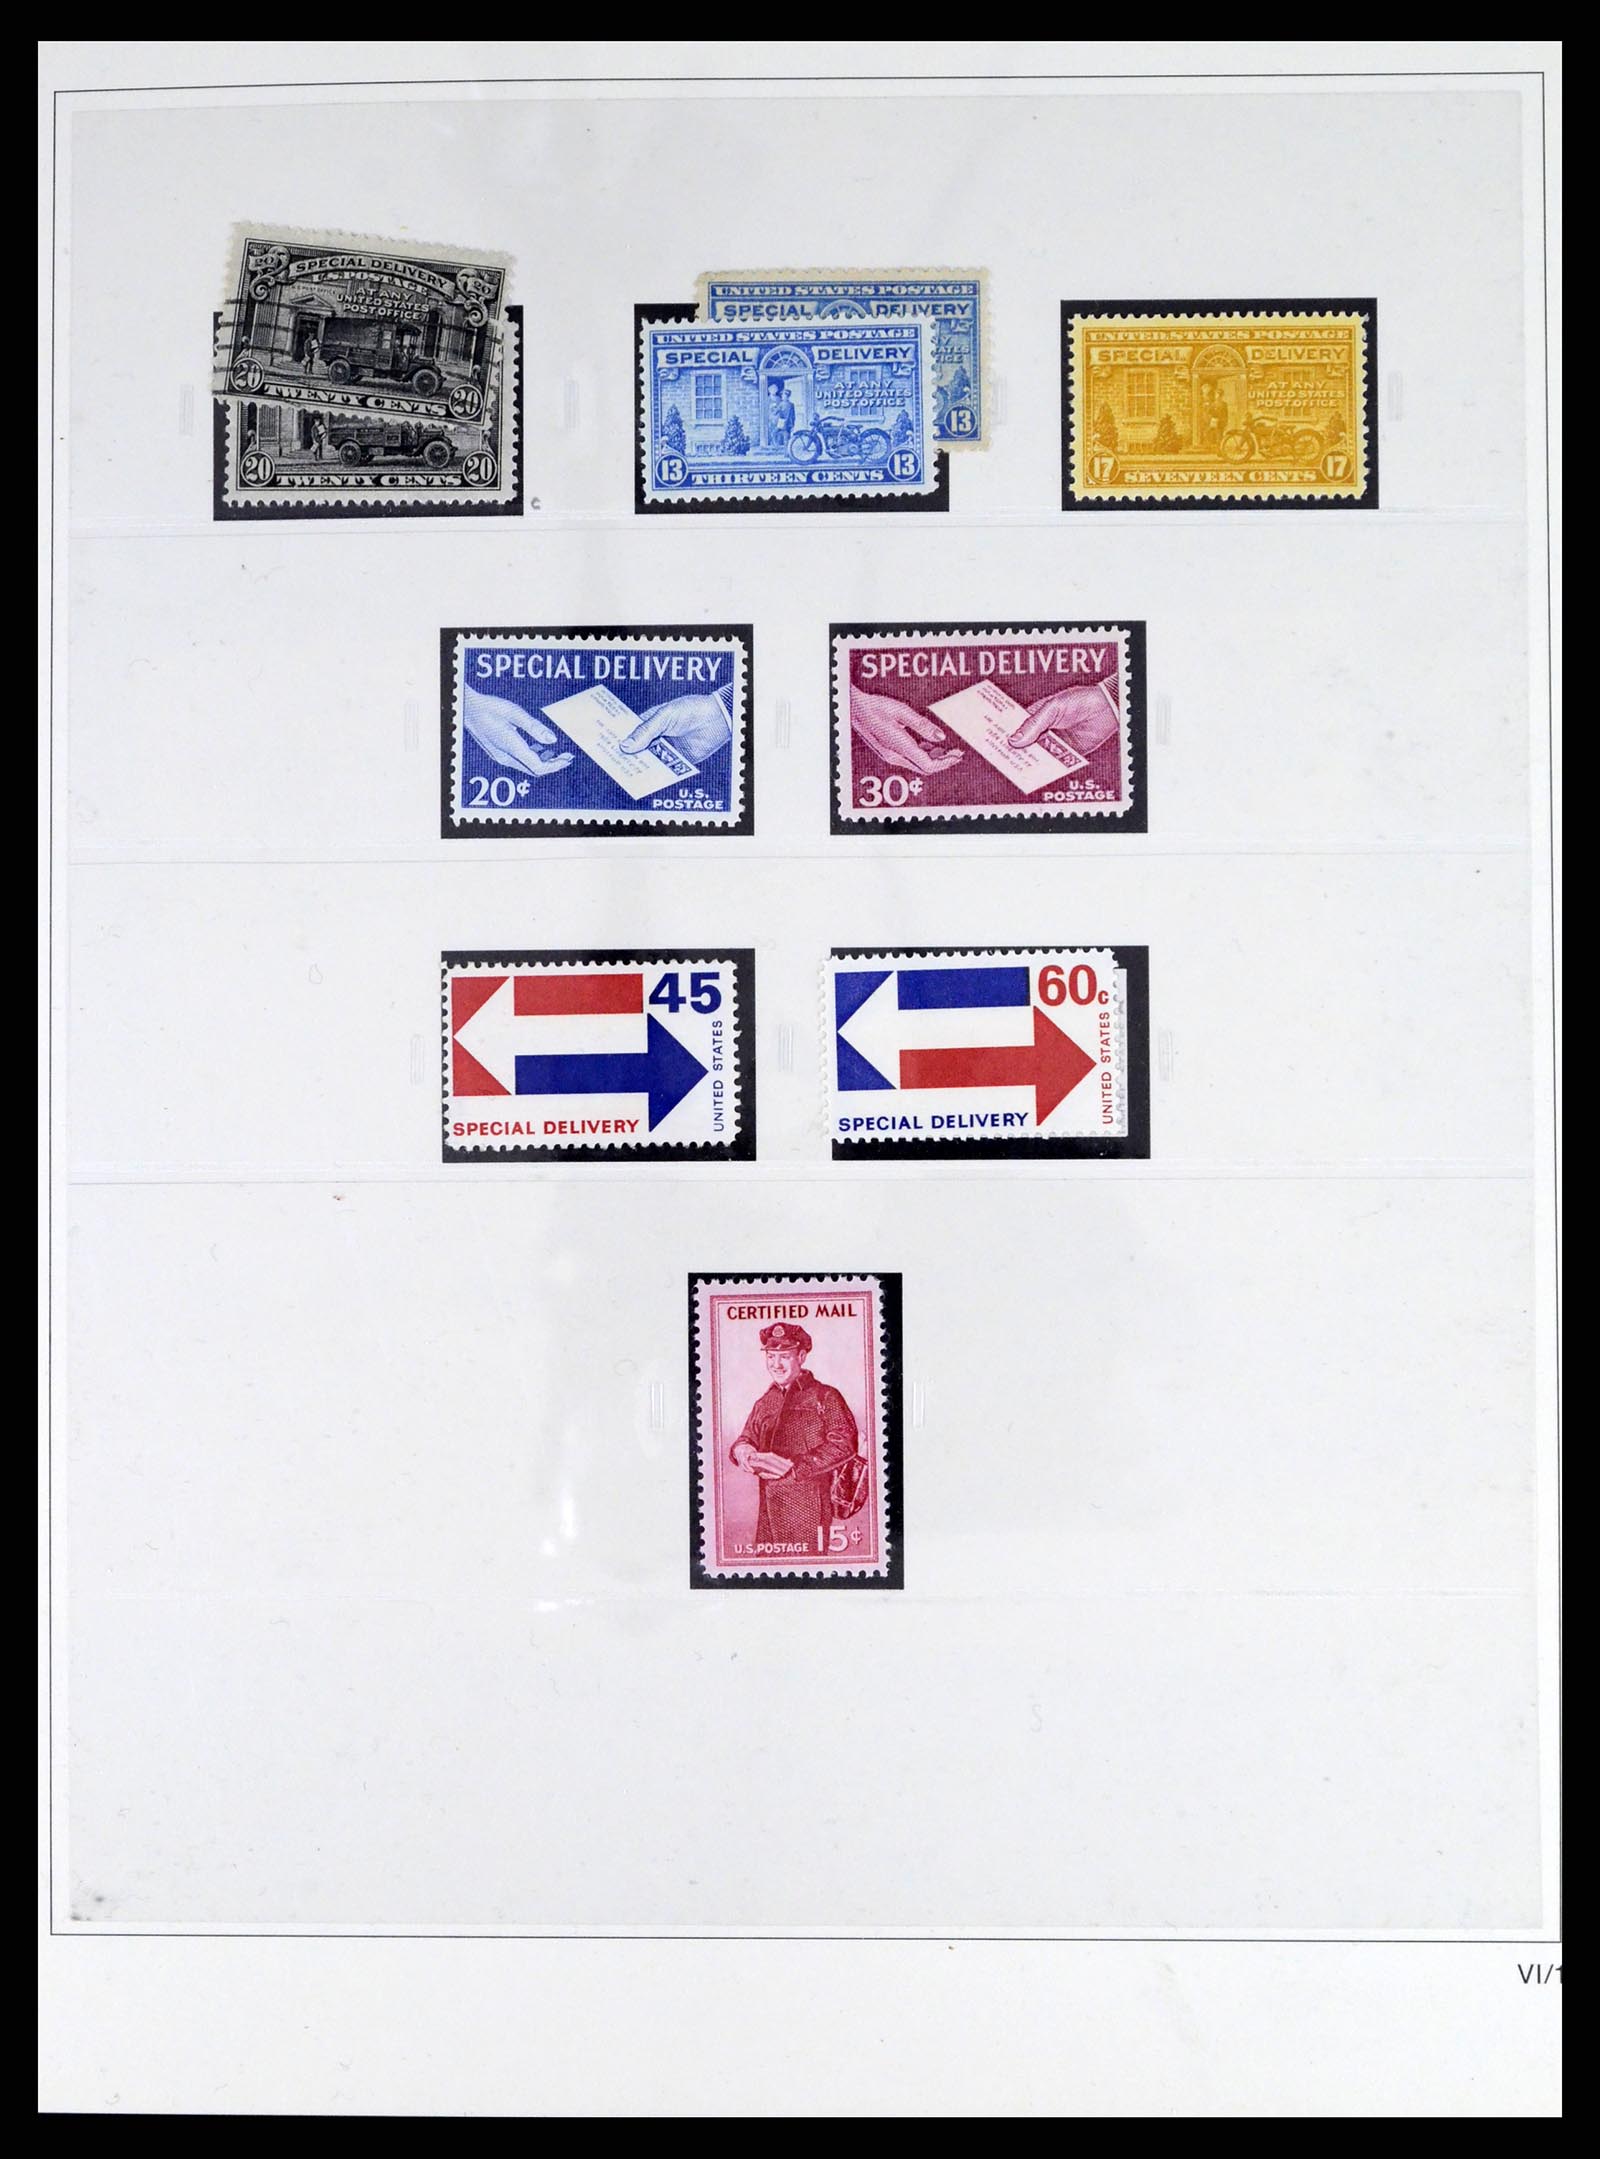 37551 193 - Stamp collection 37551 USA 1851-2001.